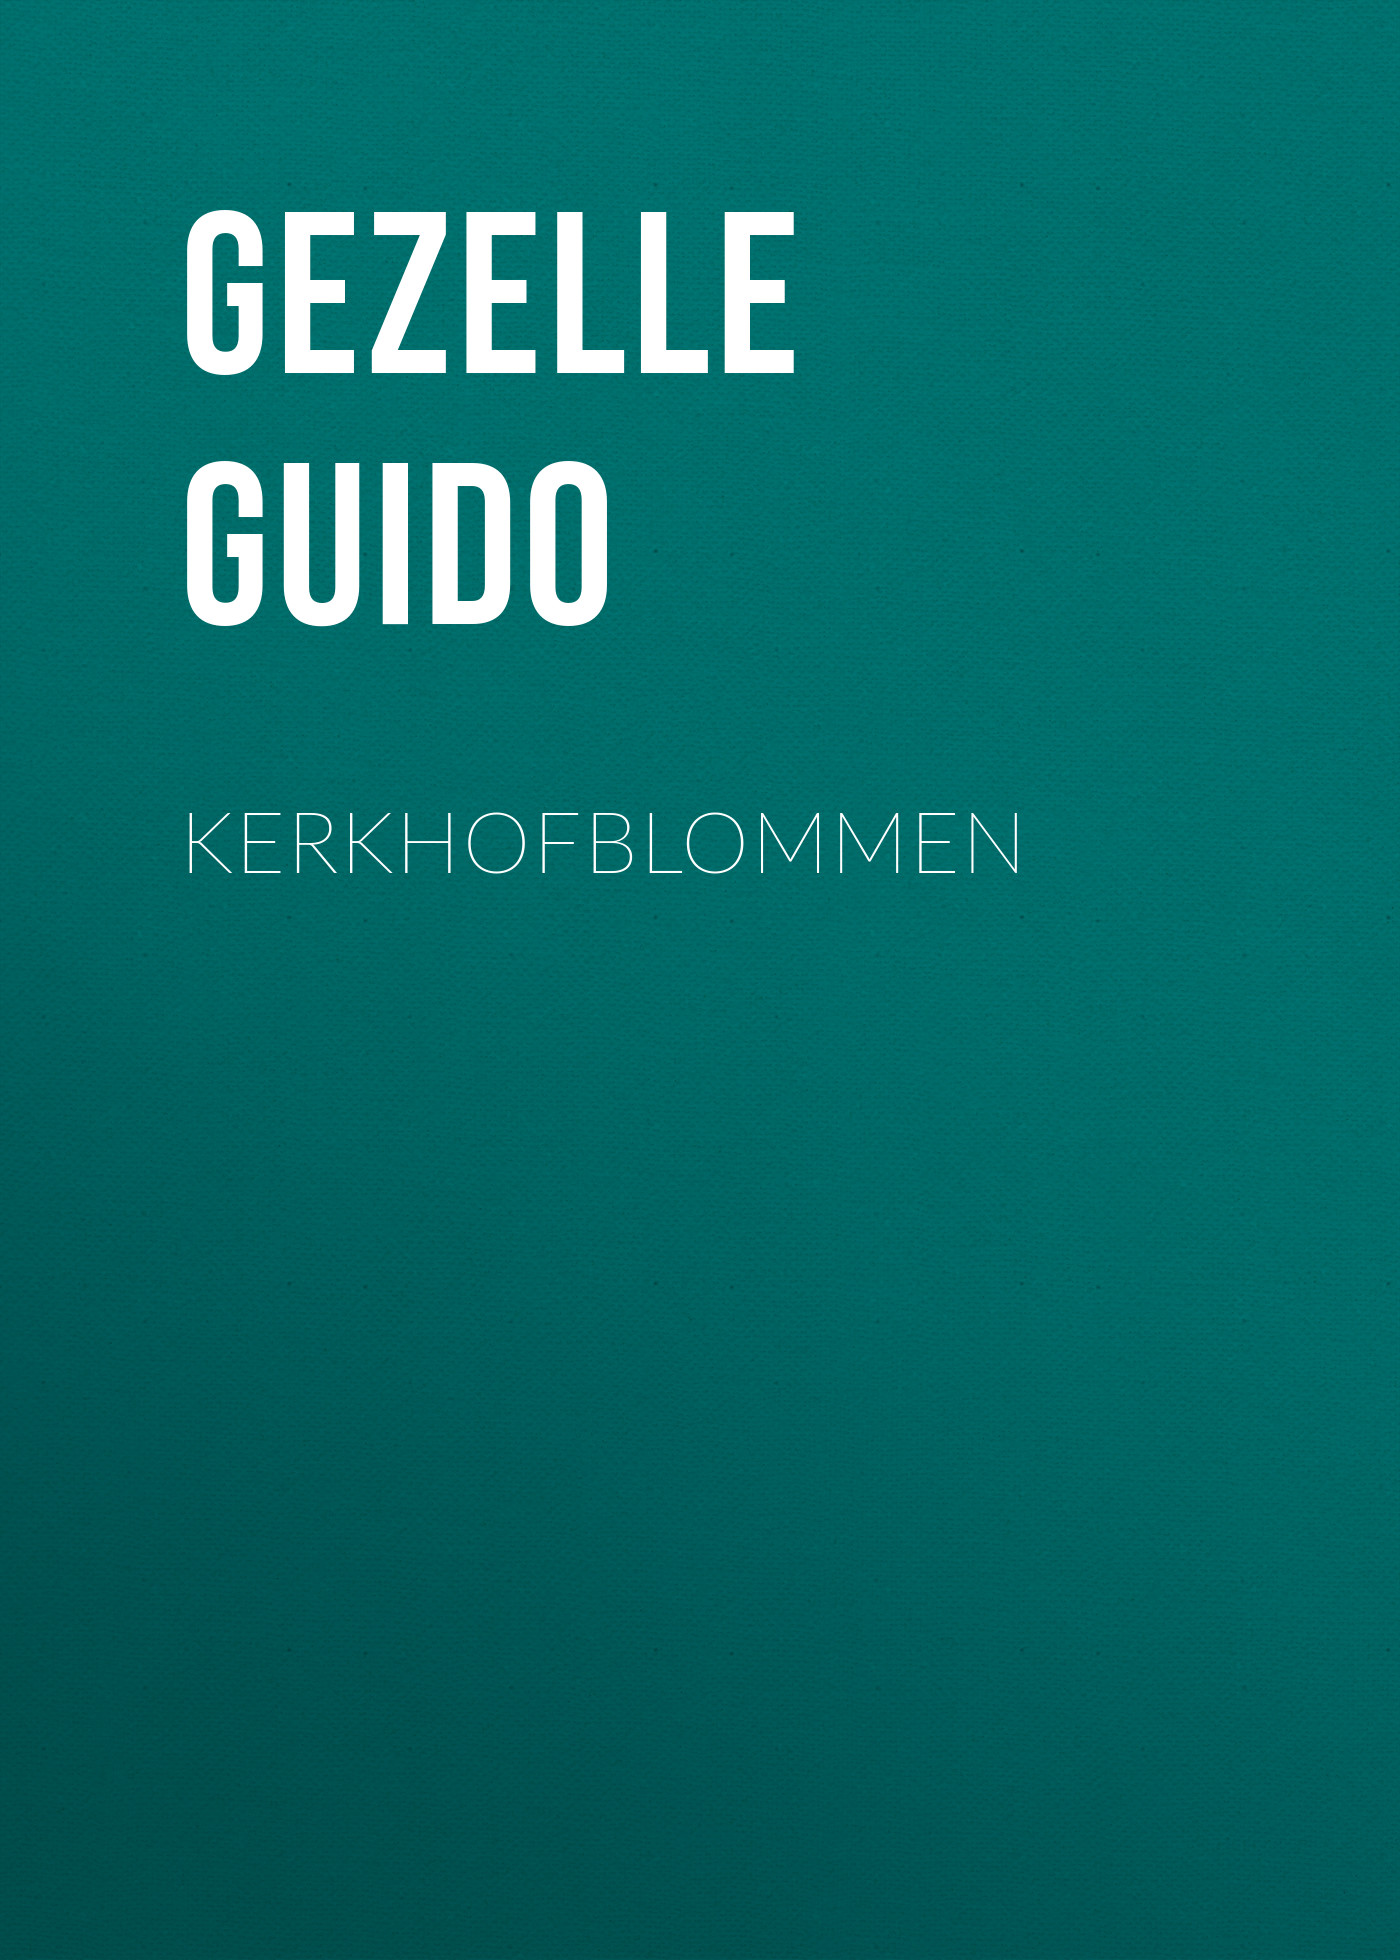 Книга Kerkhofblommen из серии , созданная Guido Gezelle, может относится к жанру Поэзия, Зарубежная старинная литература, Зарубежная классика, Зарубежные стихи. Стоимость электронной книги Kerkhofblommen с идентификатором 24937517 составляет 0 руб.